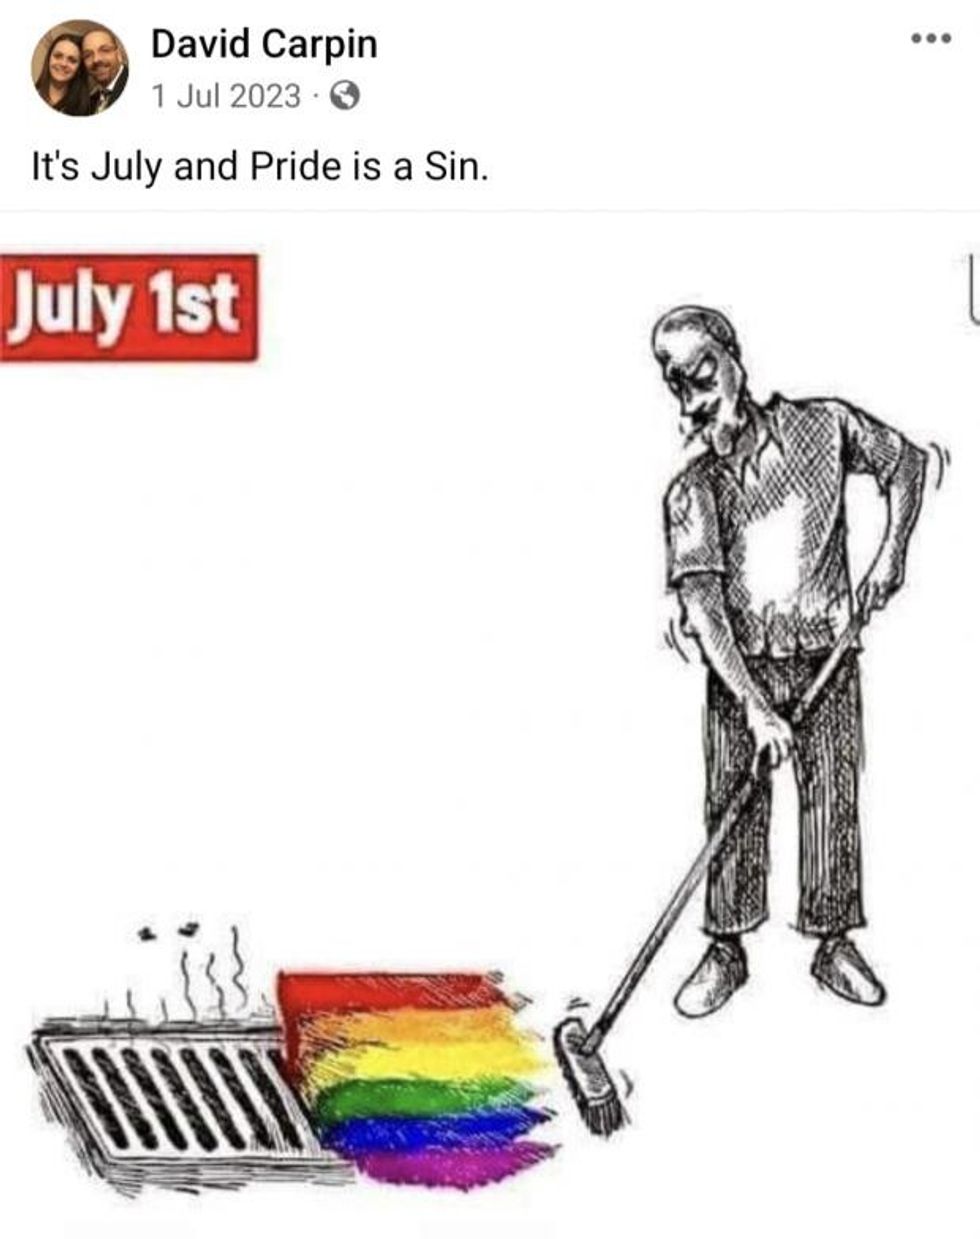 Post describing pride as a "sin"